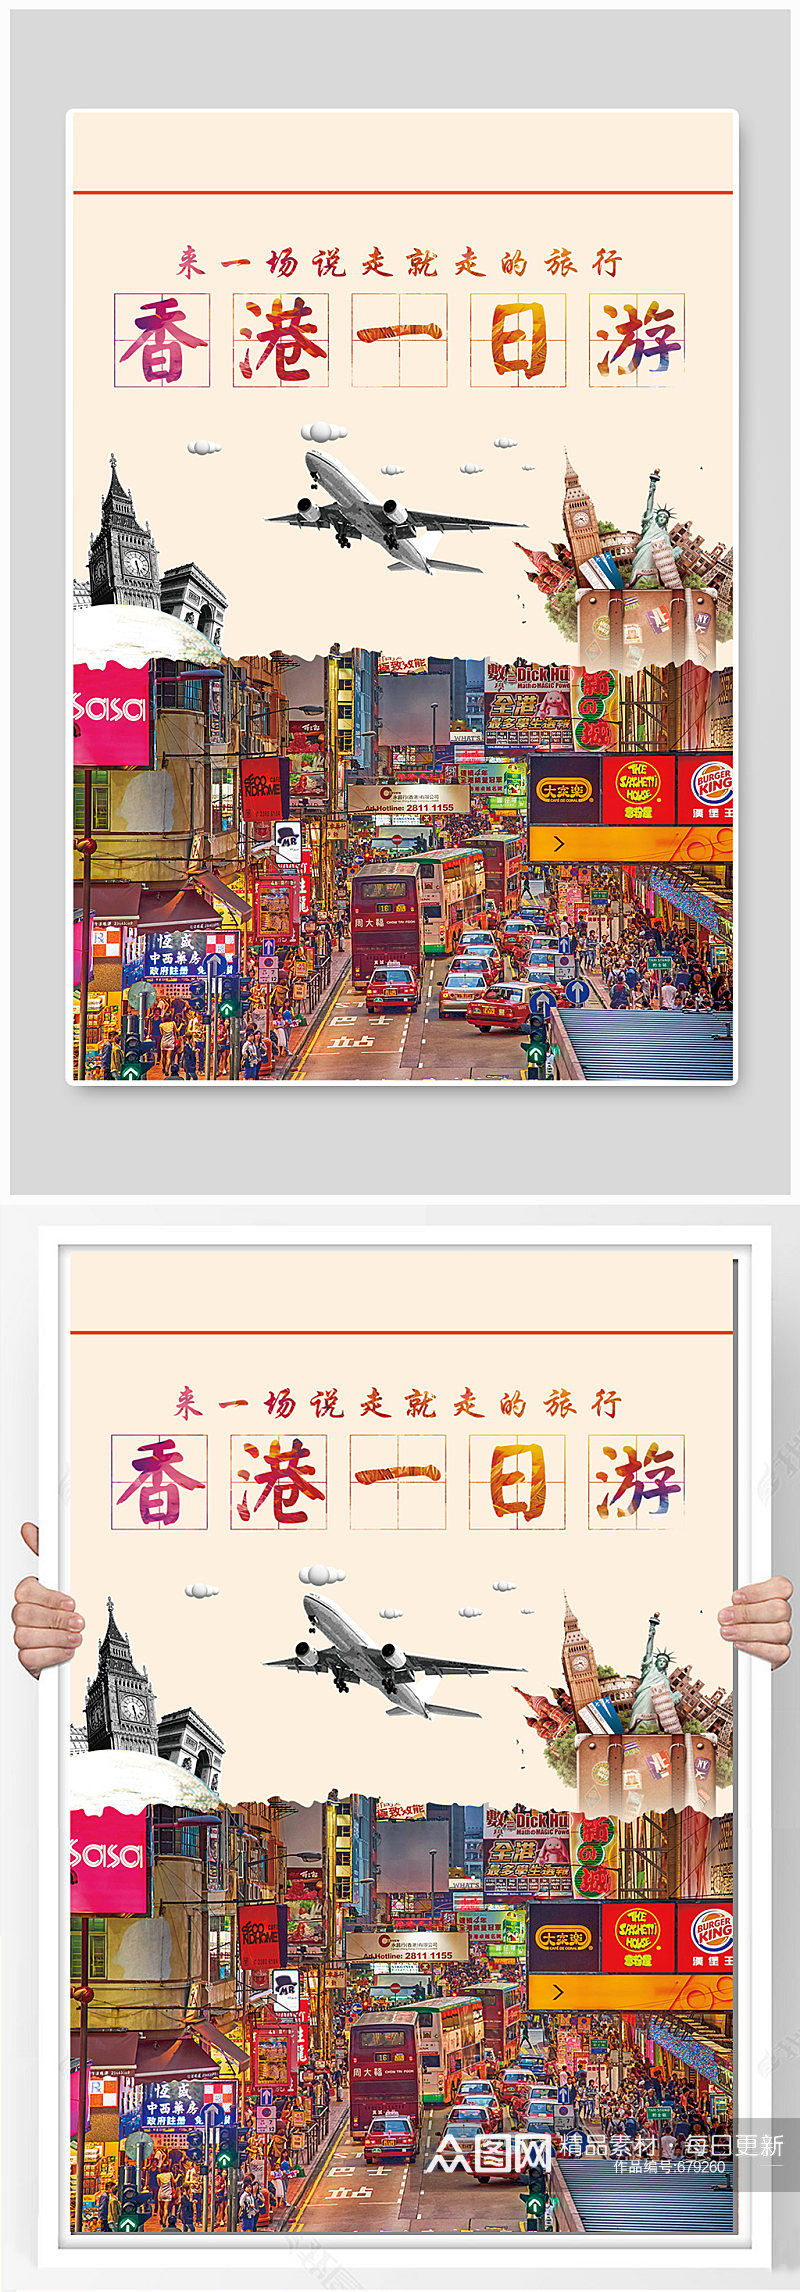 香港一日游旅游海报设计素材